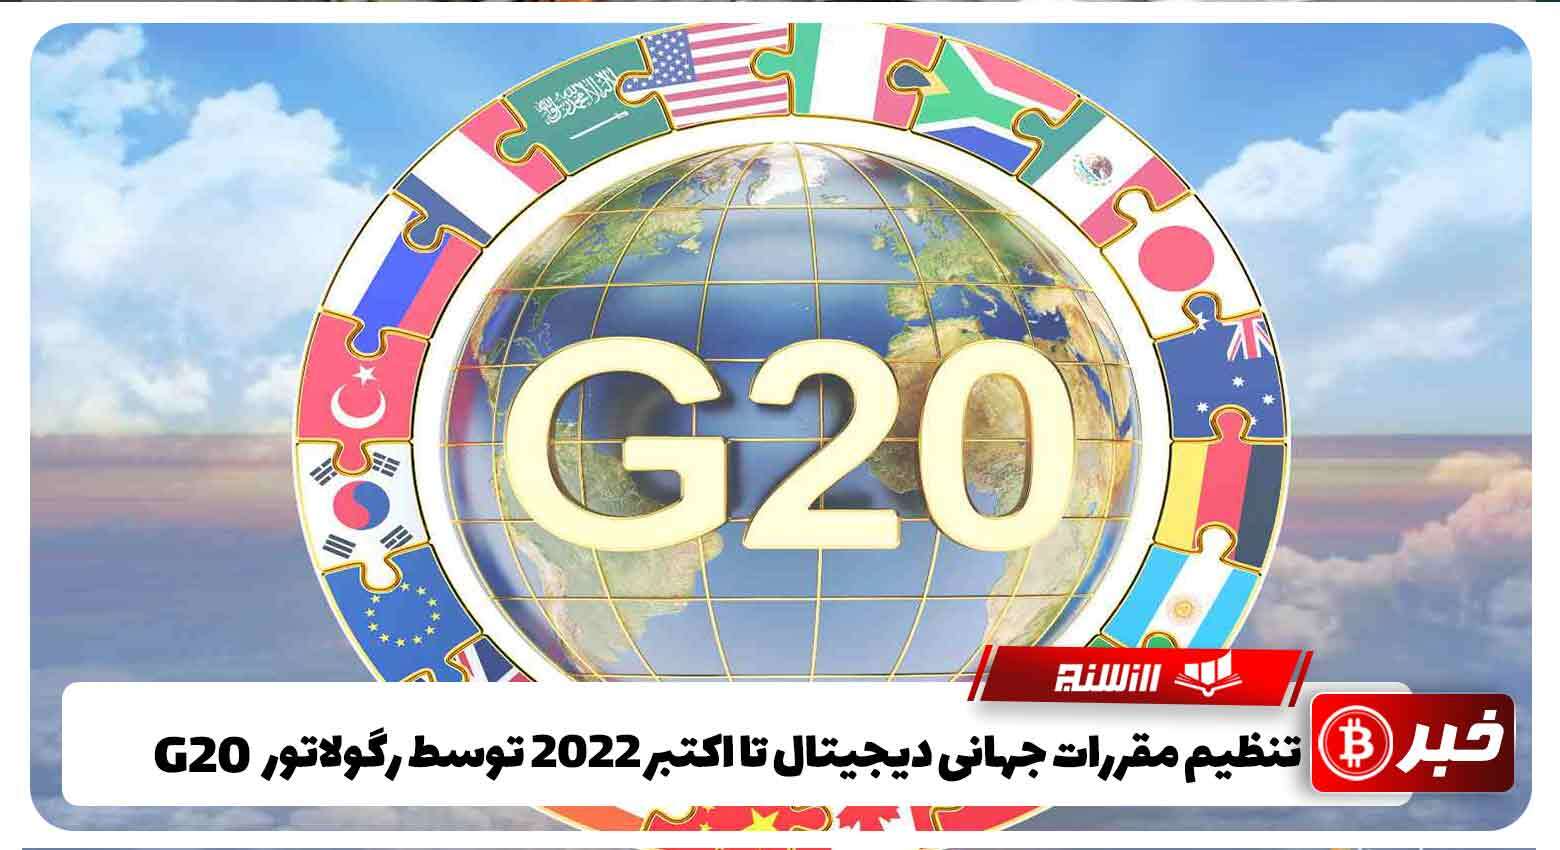 تنظیم مقررات جهانی دیجیتال تا اکتبر2022 توسط رگولاتور G20